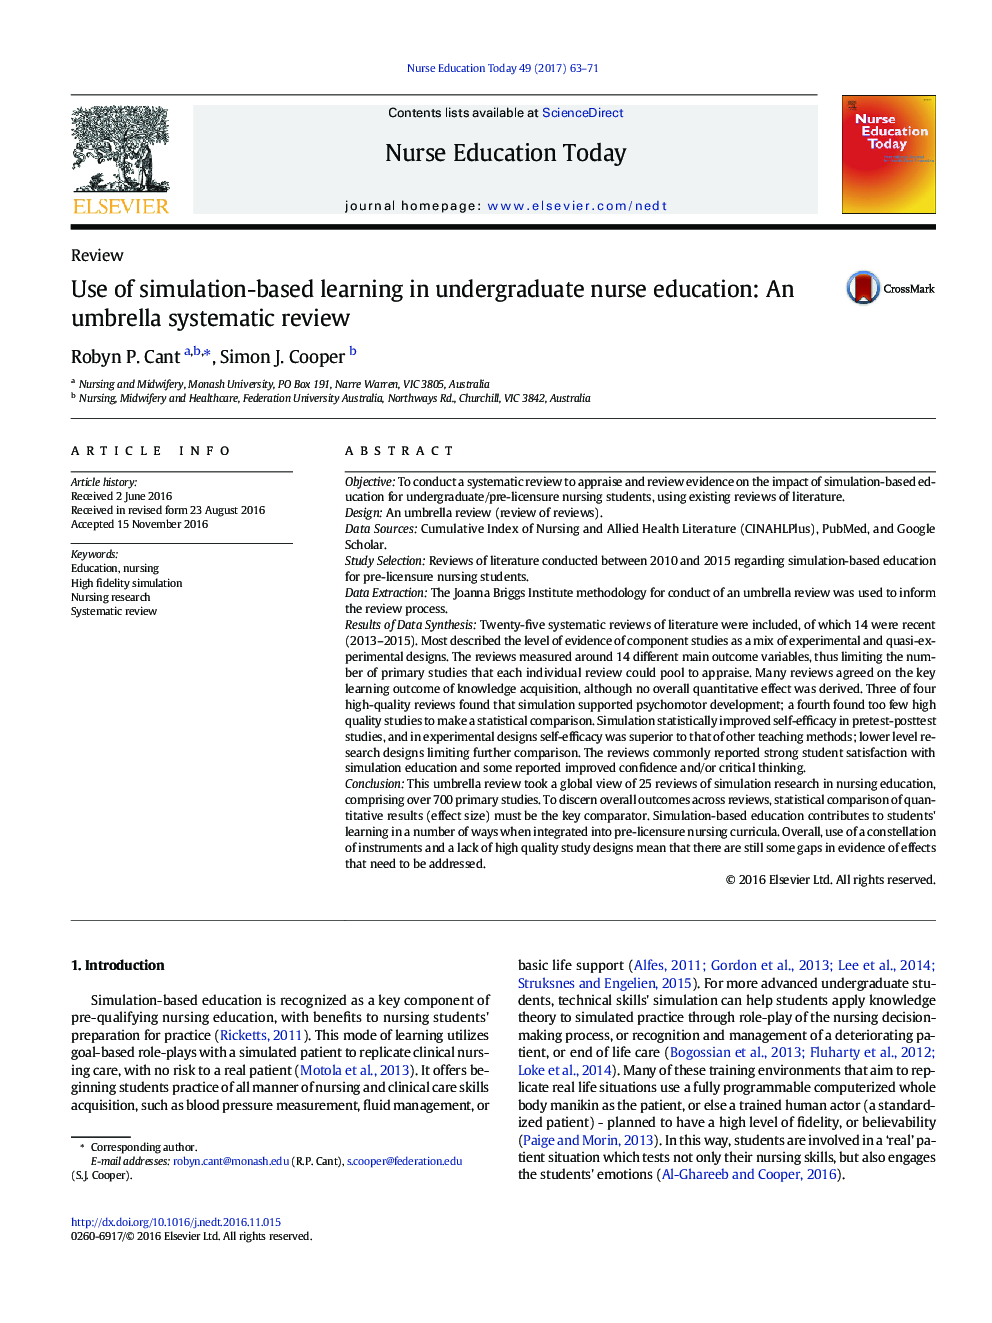 استفاده از یادگیری مبتنی بر شبیه سازی در آموزش پرستاران دوره کارشناسی: یک بررسی سیستماتیک چتر 